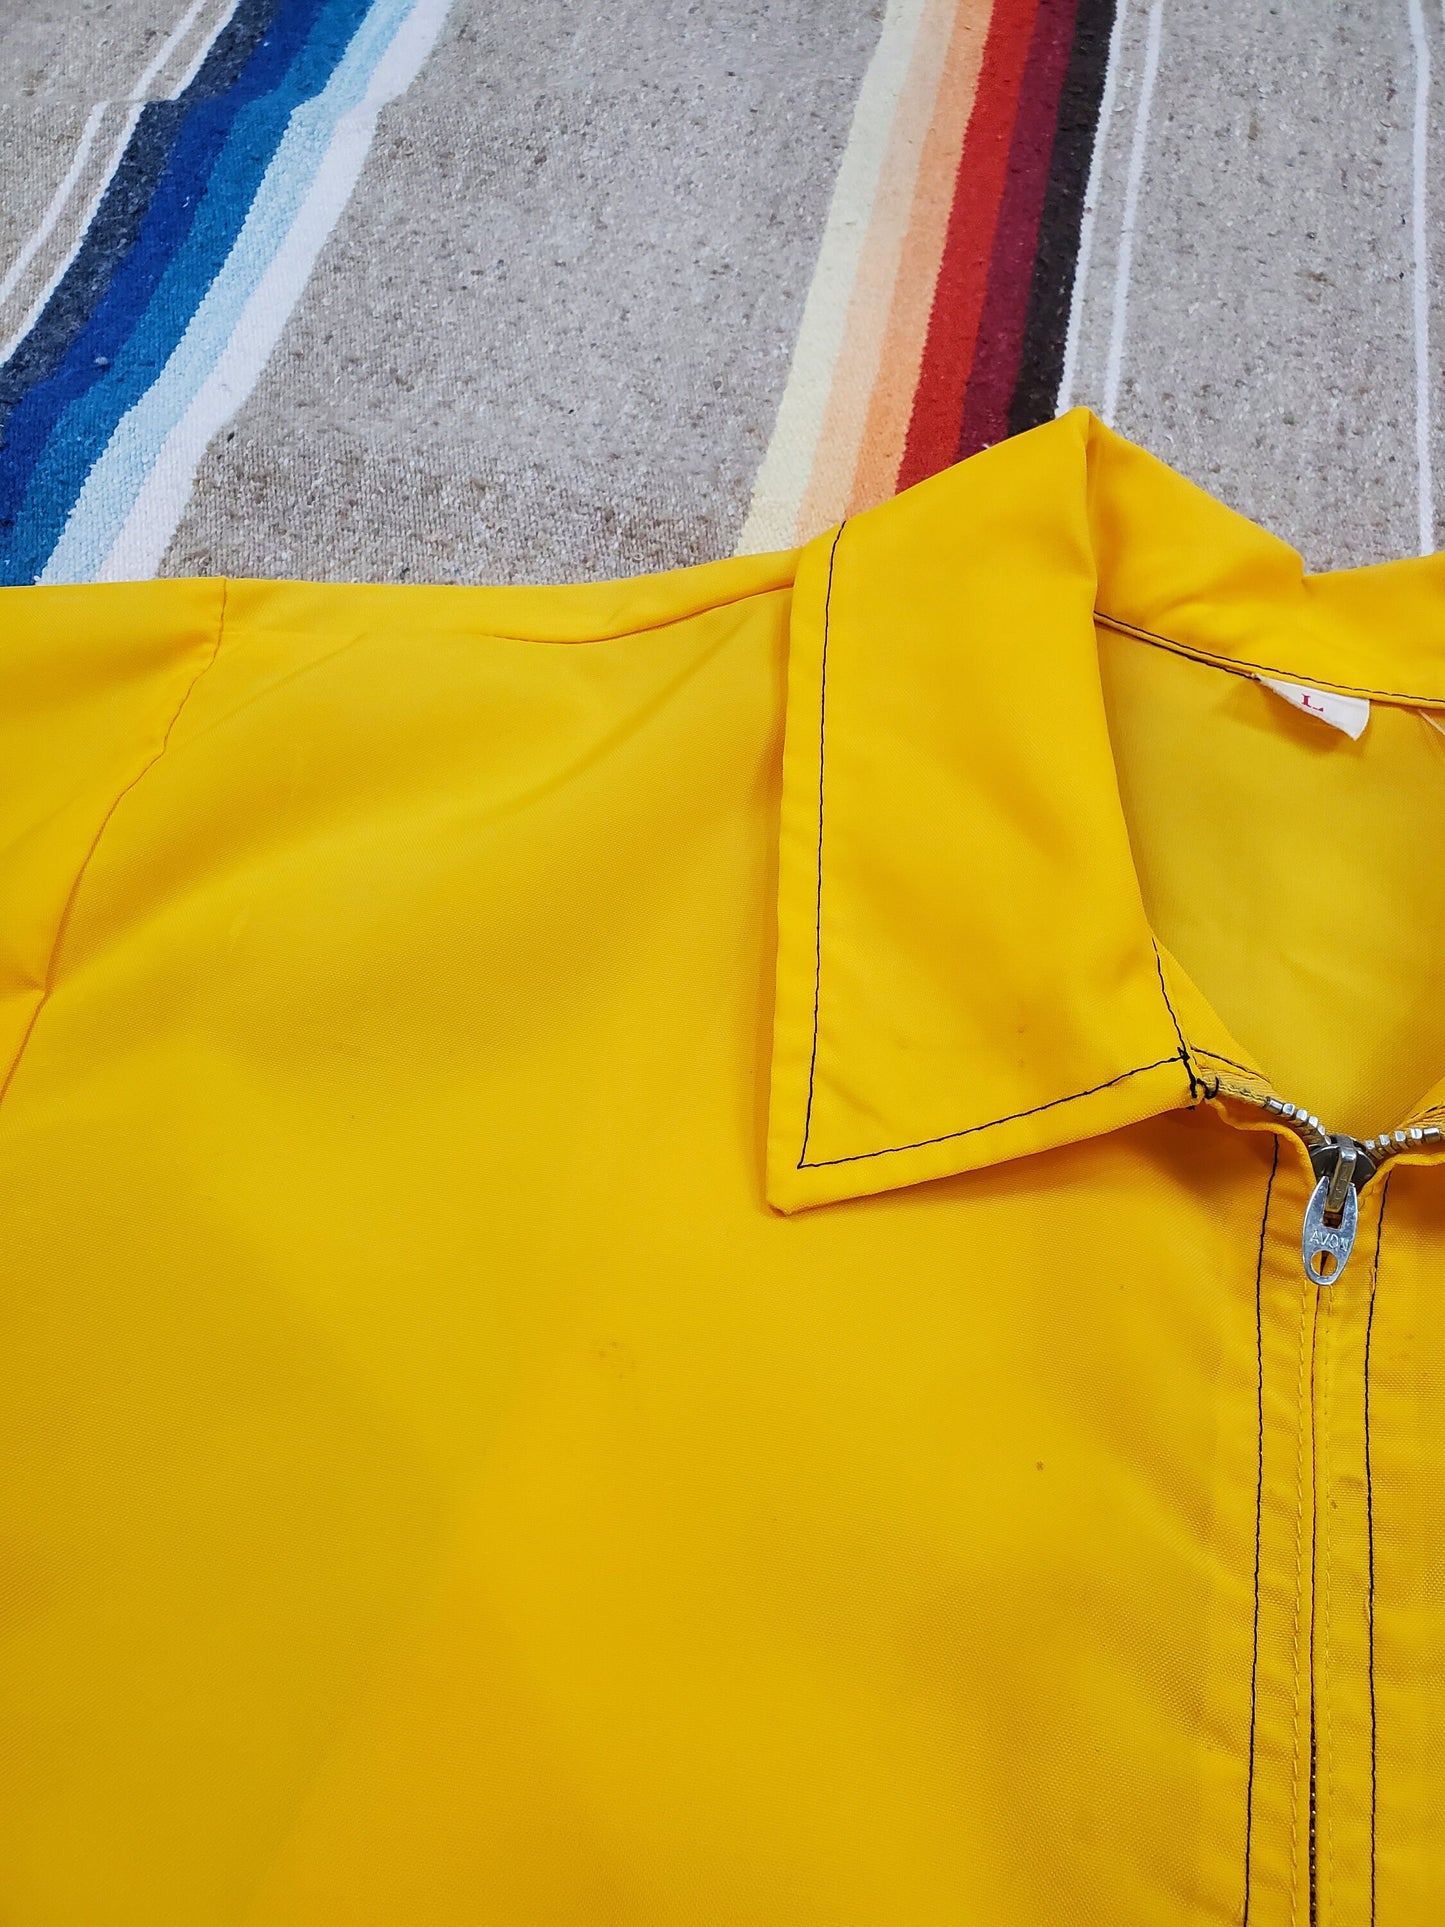 1970s/1980s Avon John Deere Zip-Up Nylon Windbreaker Jacket Size L/XL